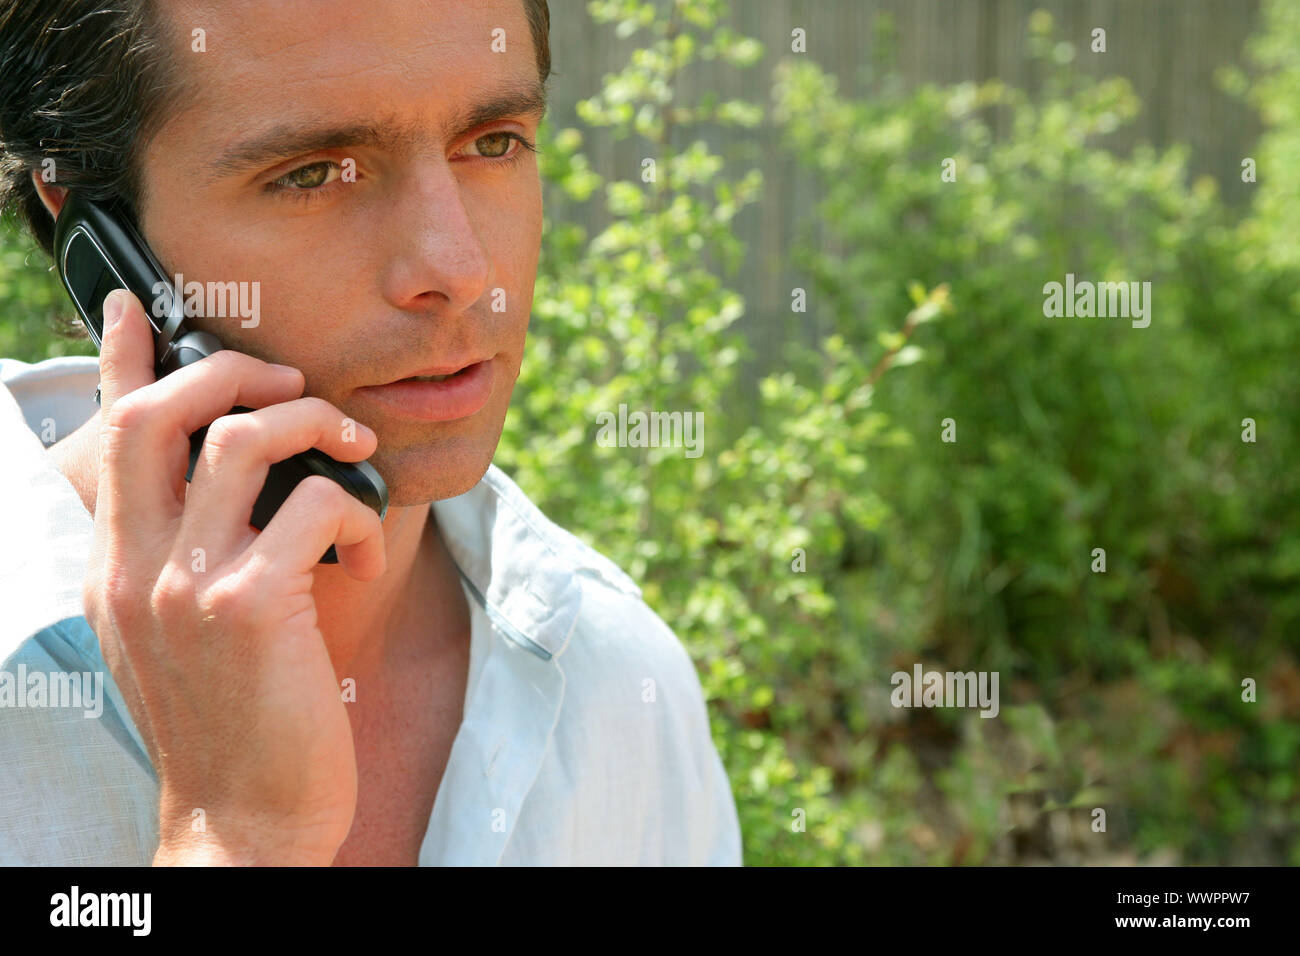 Красивые мужские телефоны. Пареньразговаоривает по телефону. Мужчина разговаривает по телефону. Мужчина с телефоном. Мужик говорит по телефону.